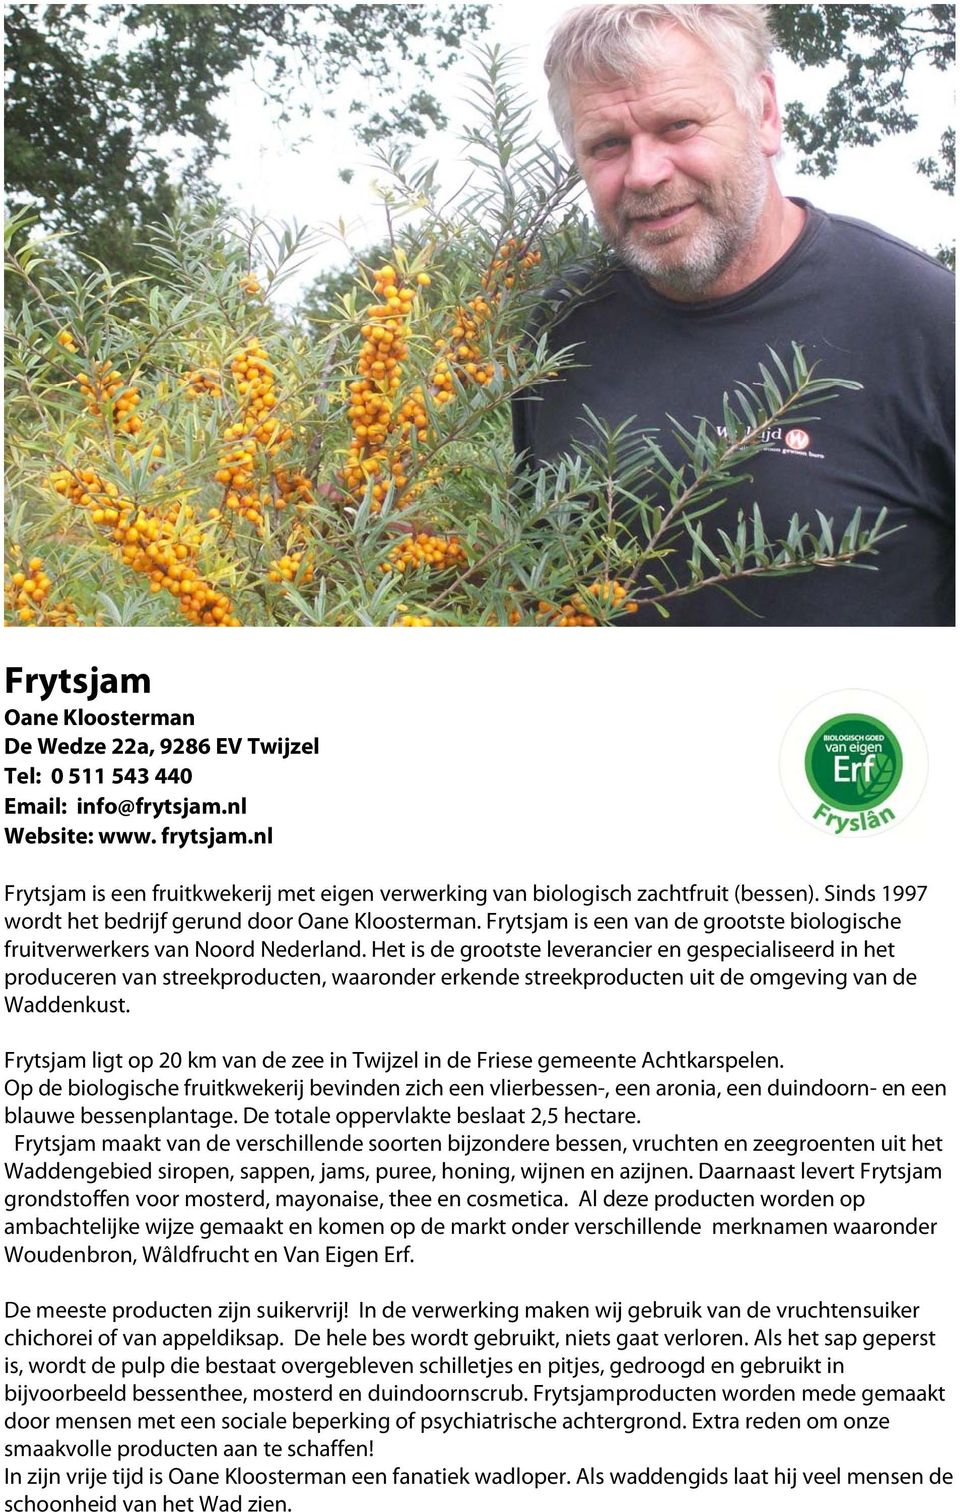 Frytsjam is een van de grootste biologische fruitverwerkers van Noord Nederland.